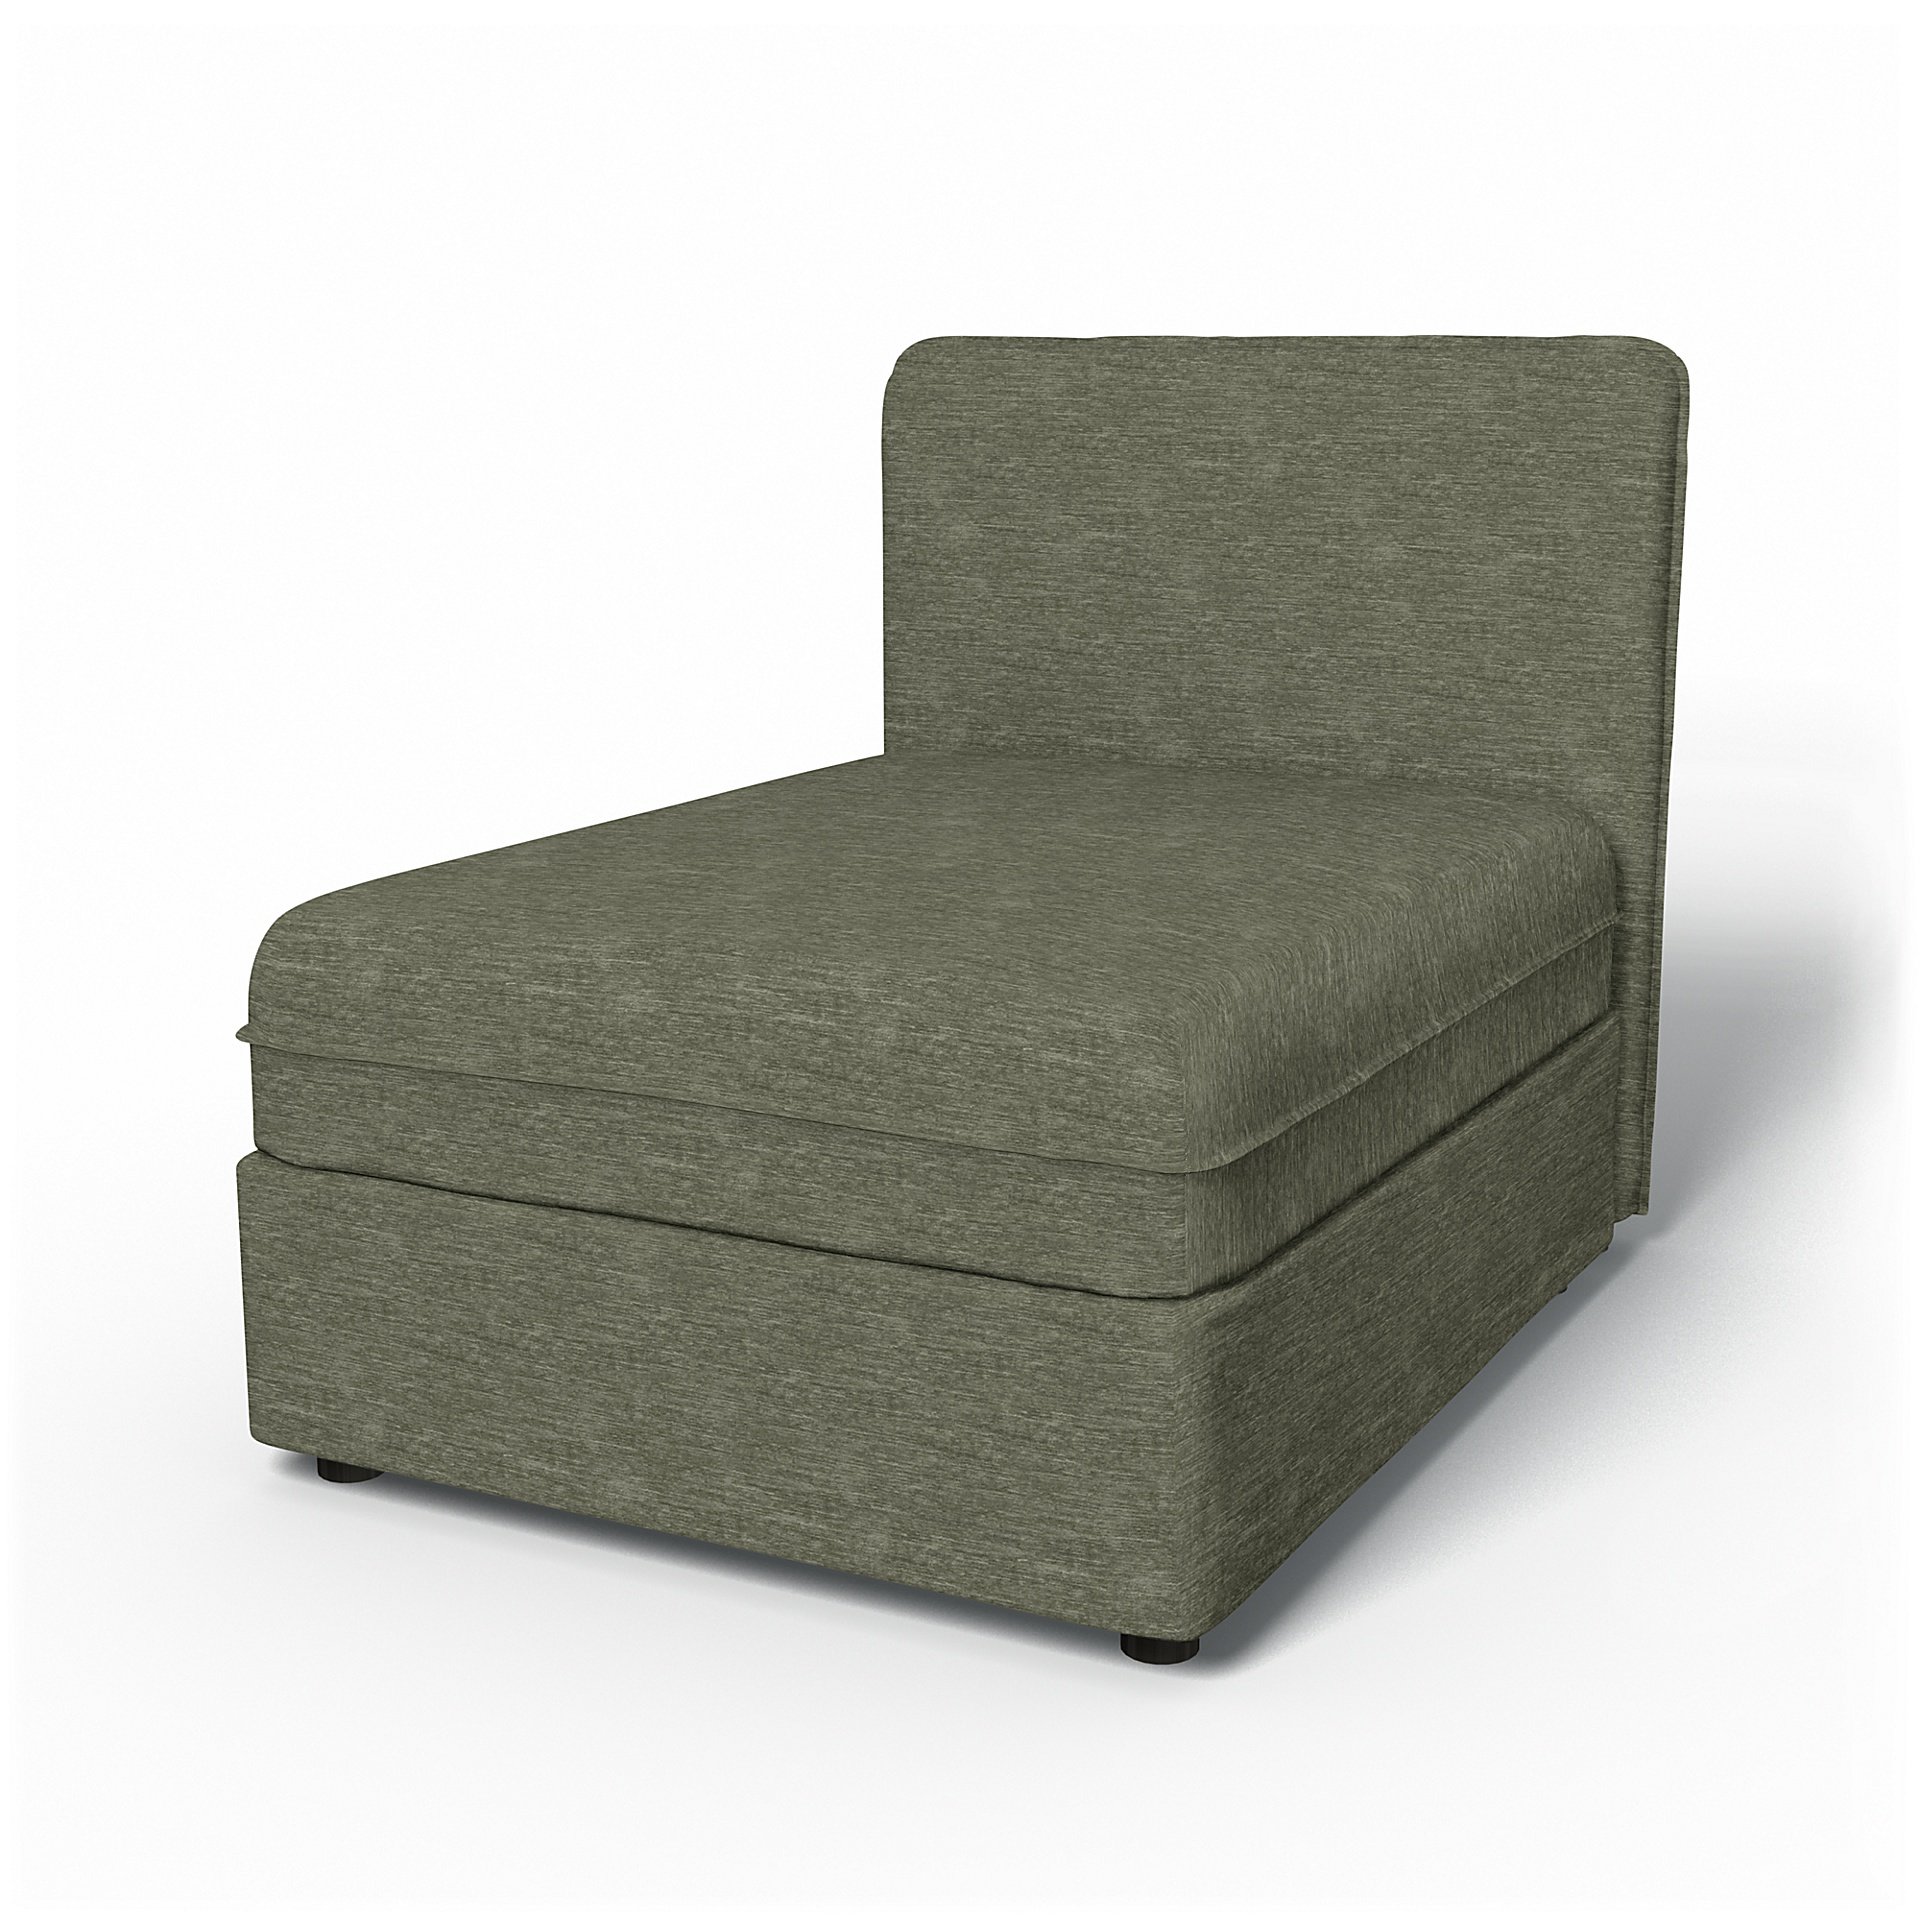 IKEA - Vallentuna Seat Module with Low Back Cover 80x100cm 32x39in, Green Grey, Velvet - Bemz